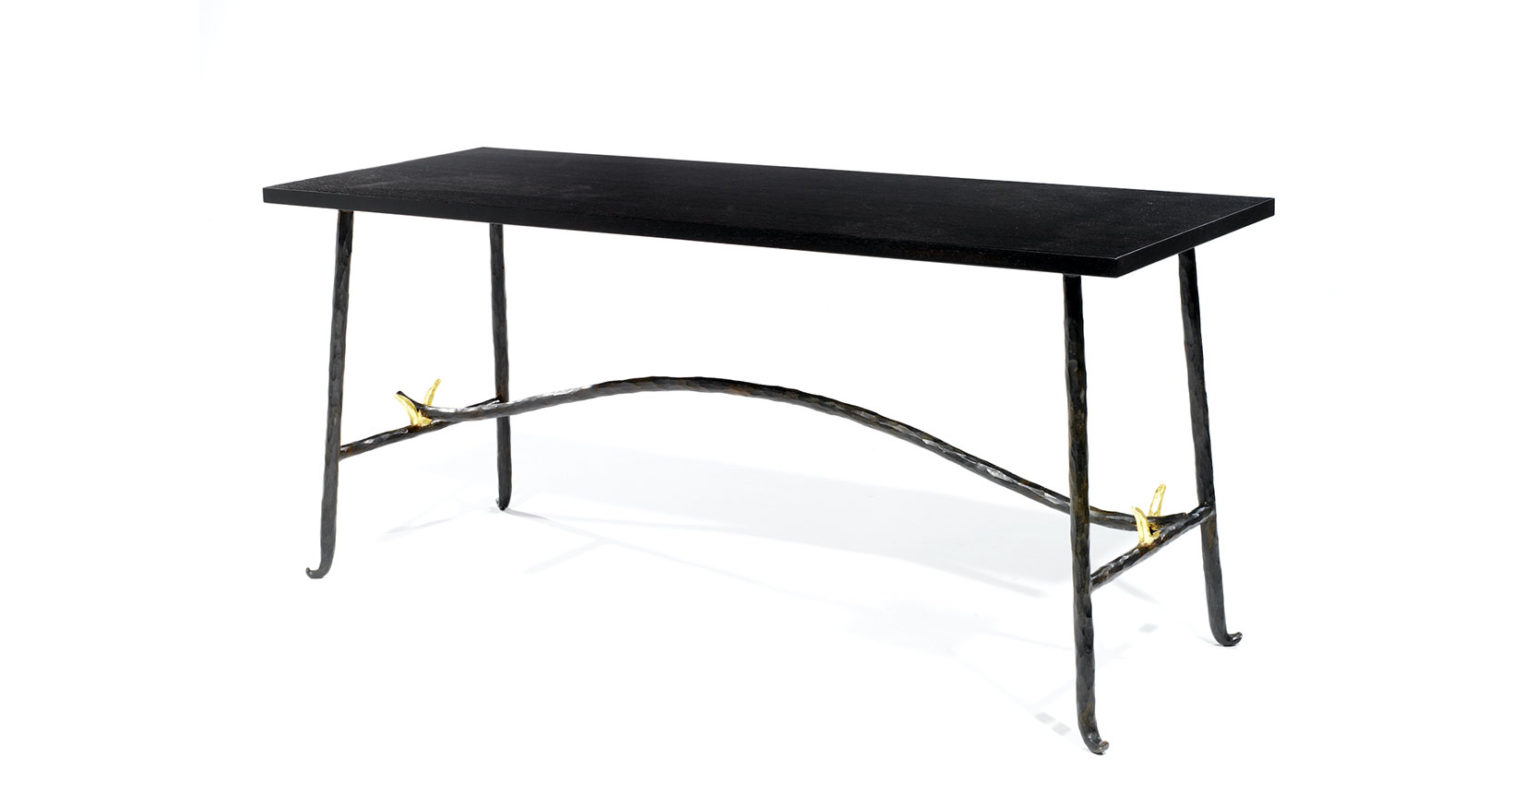 Garouste Bonetti, table basse minimaliste, pieds en fer forgé noir légèrement courbés en bas, avec deux petits V dorés, plateau en bois brun foncé